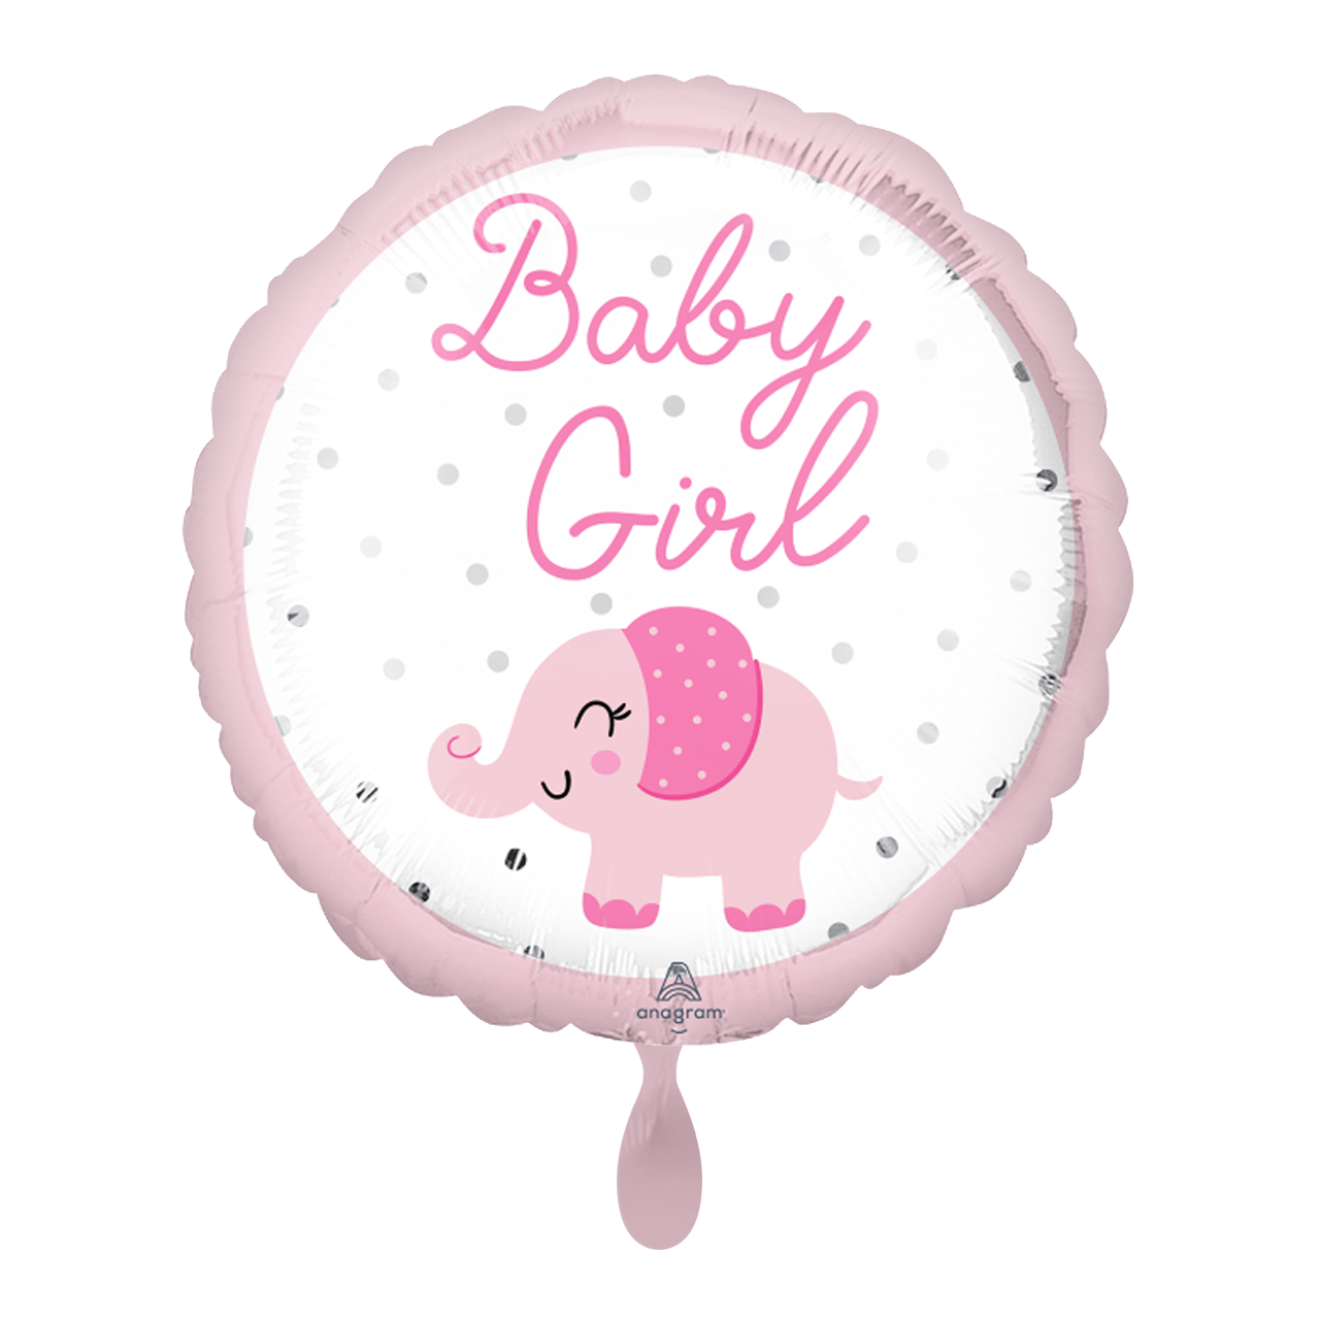 1 Balloon - Baby Girl Elephant